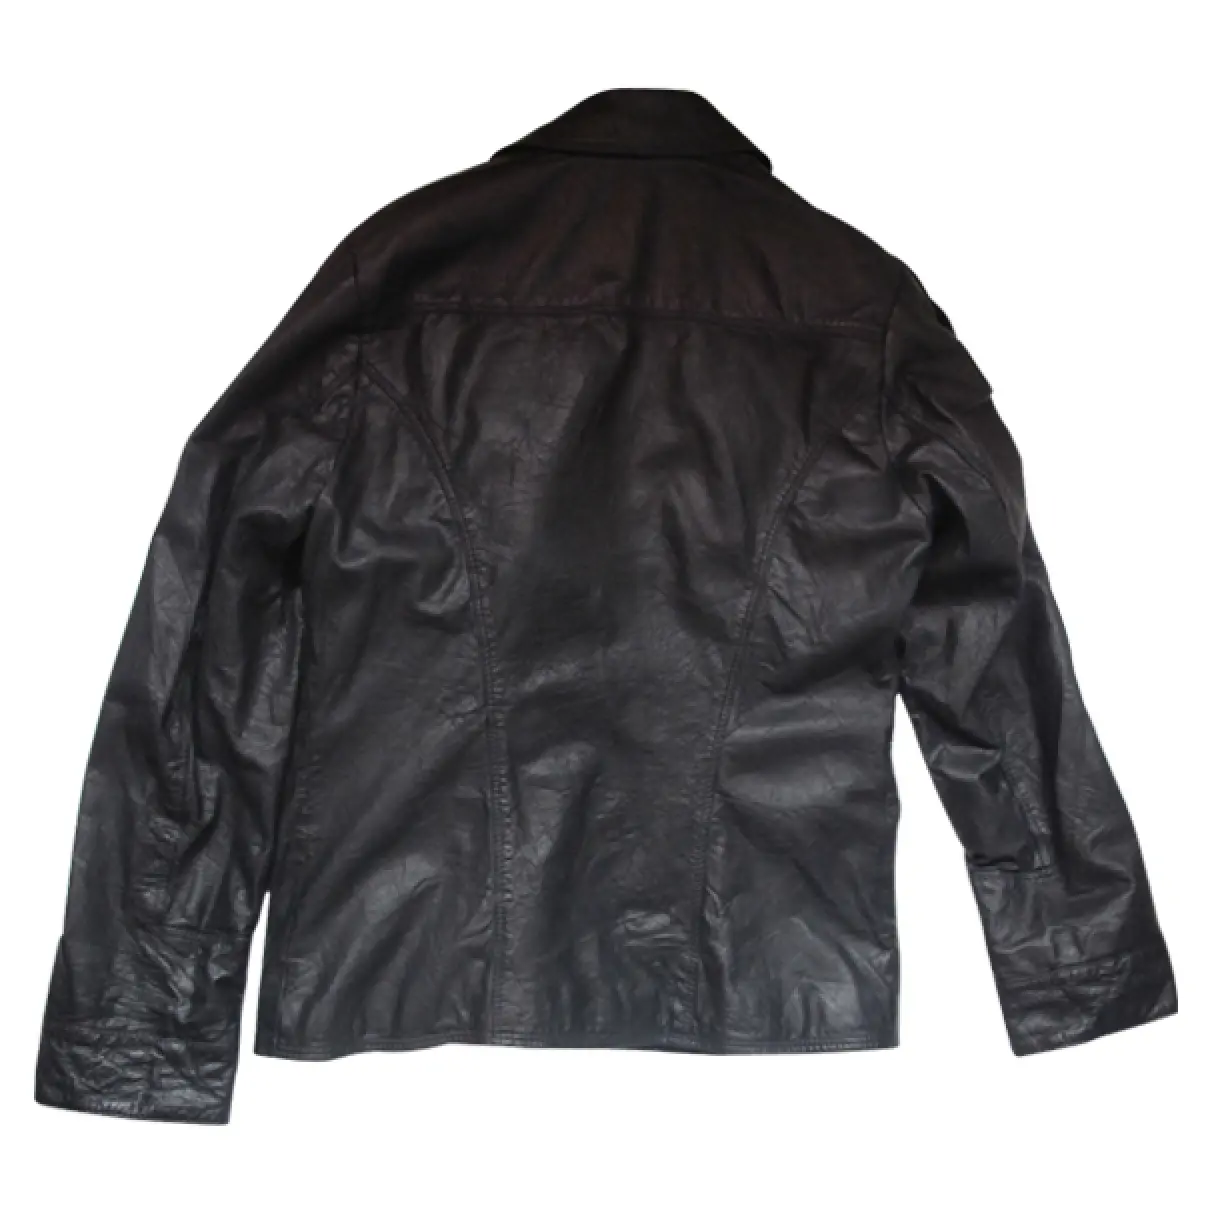 Buy Napapijri Leather jacket online